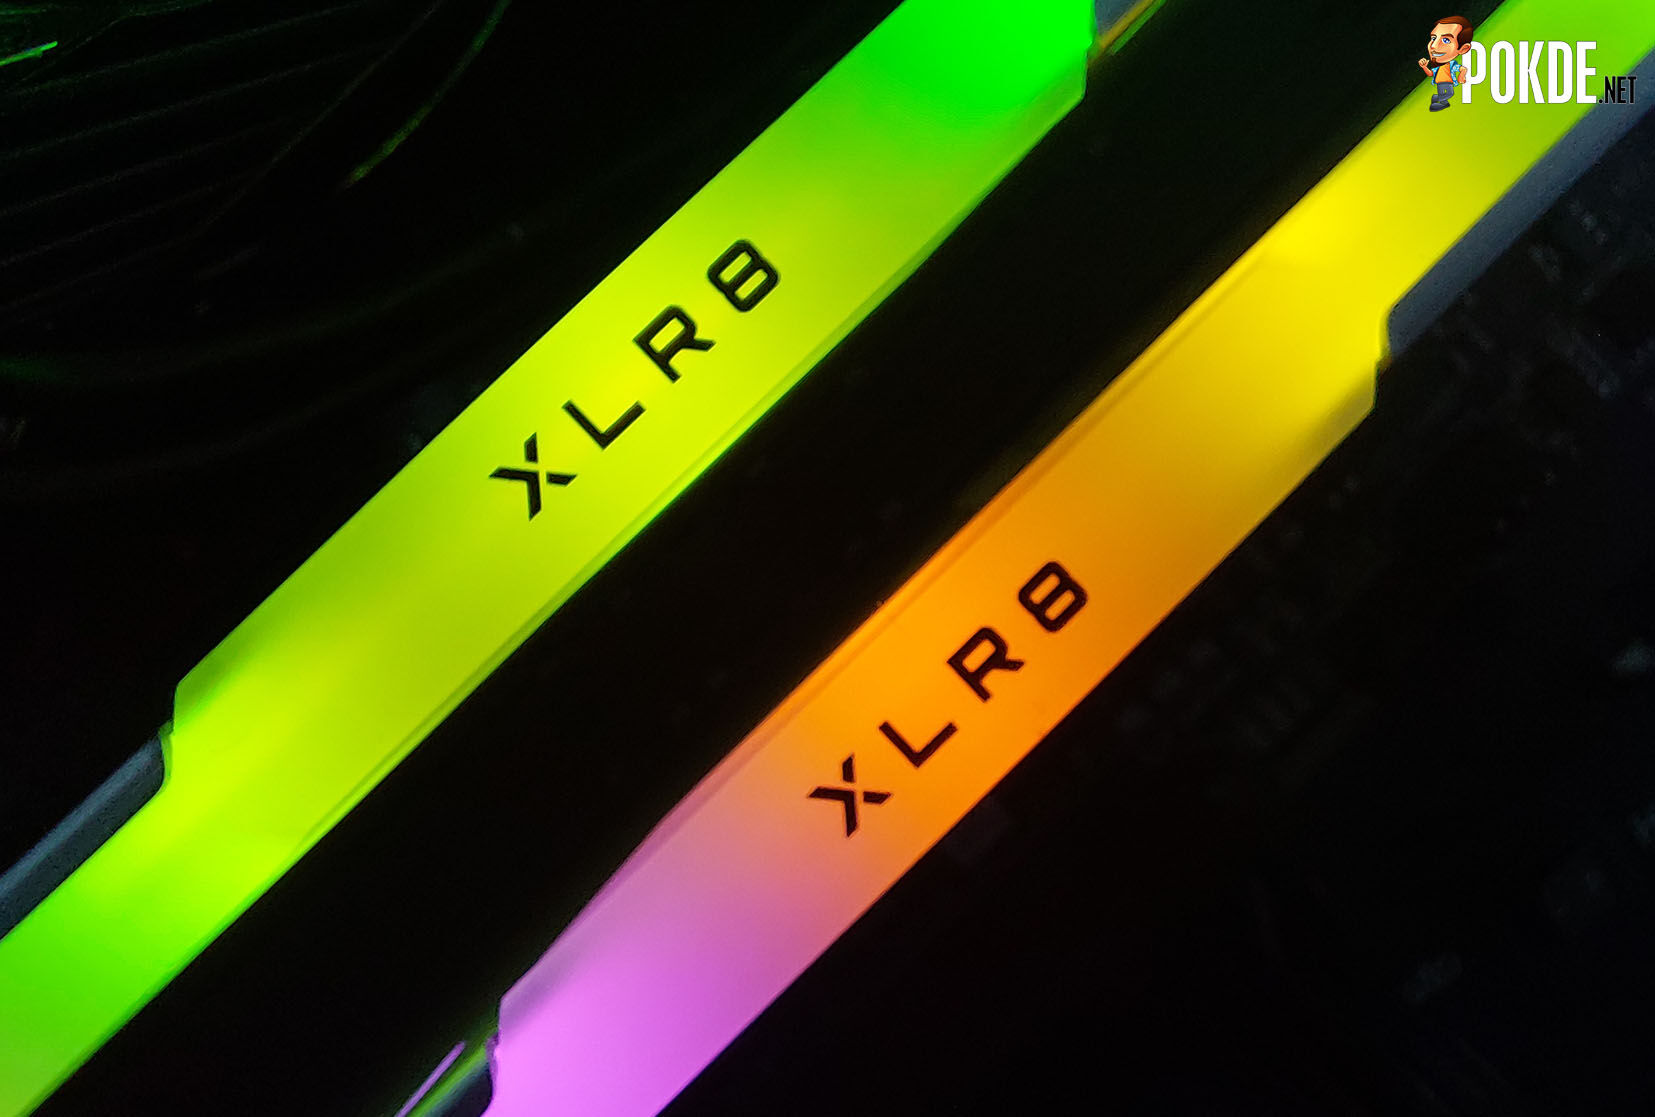 PNY XLR8 EPIC-X RGB Silver DDR4 (DDR4-3200 CL16) Review - A Cheap RGB Entry Ticket 27